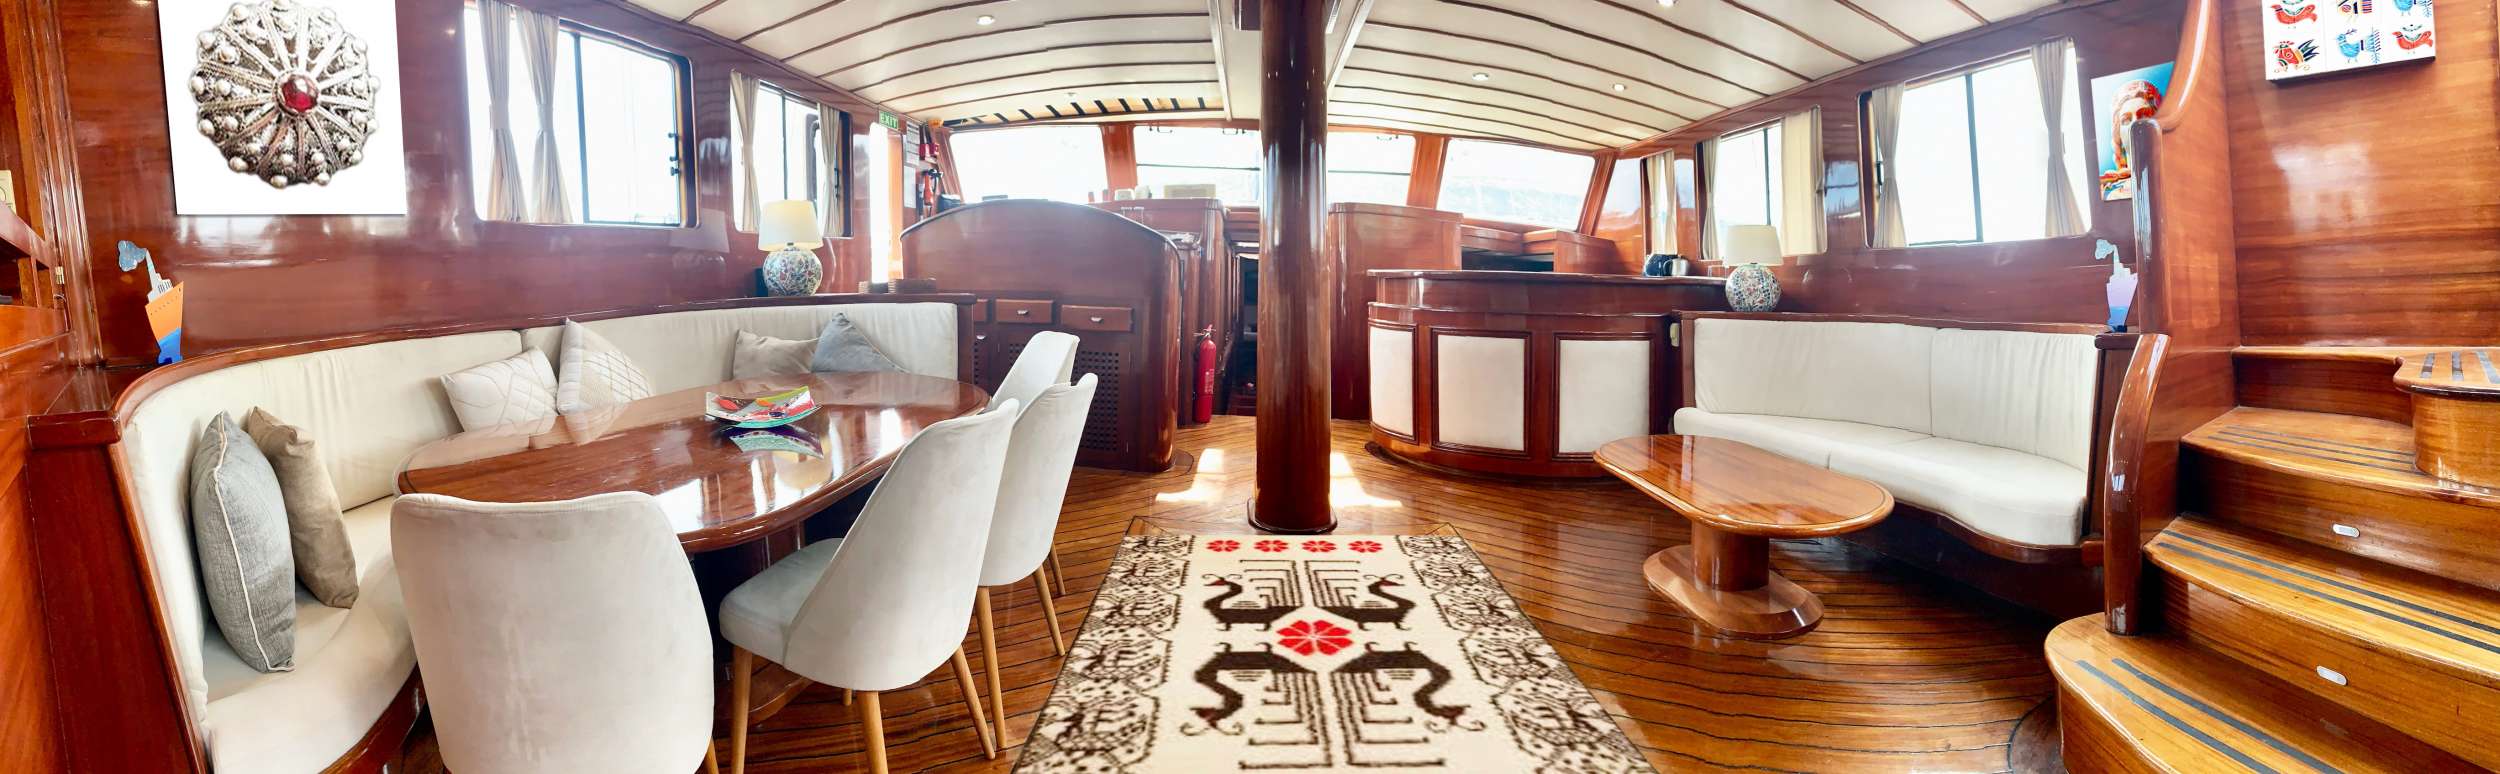 Elianora  - Yacht Charter Calanova & Boat hire in W. Med -Naples/Sicily, W. Med -Riviera/Cors/Sard., W. Med - Spain/Balearics 5